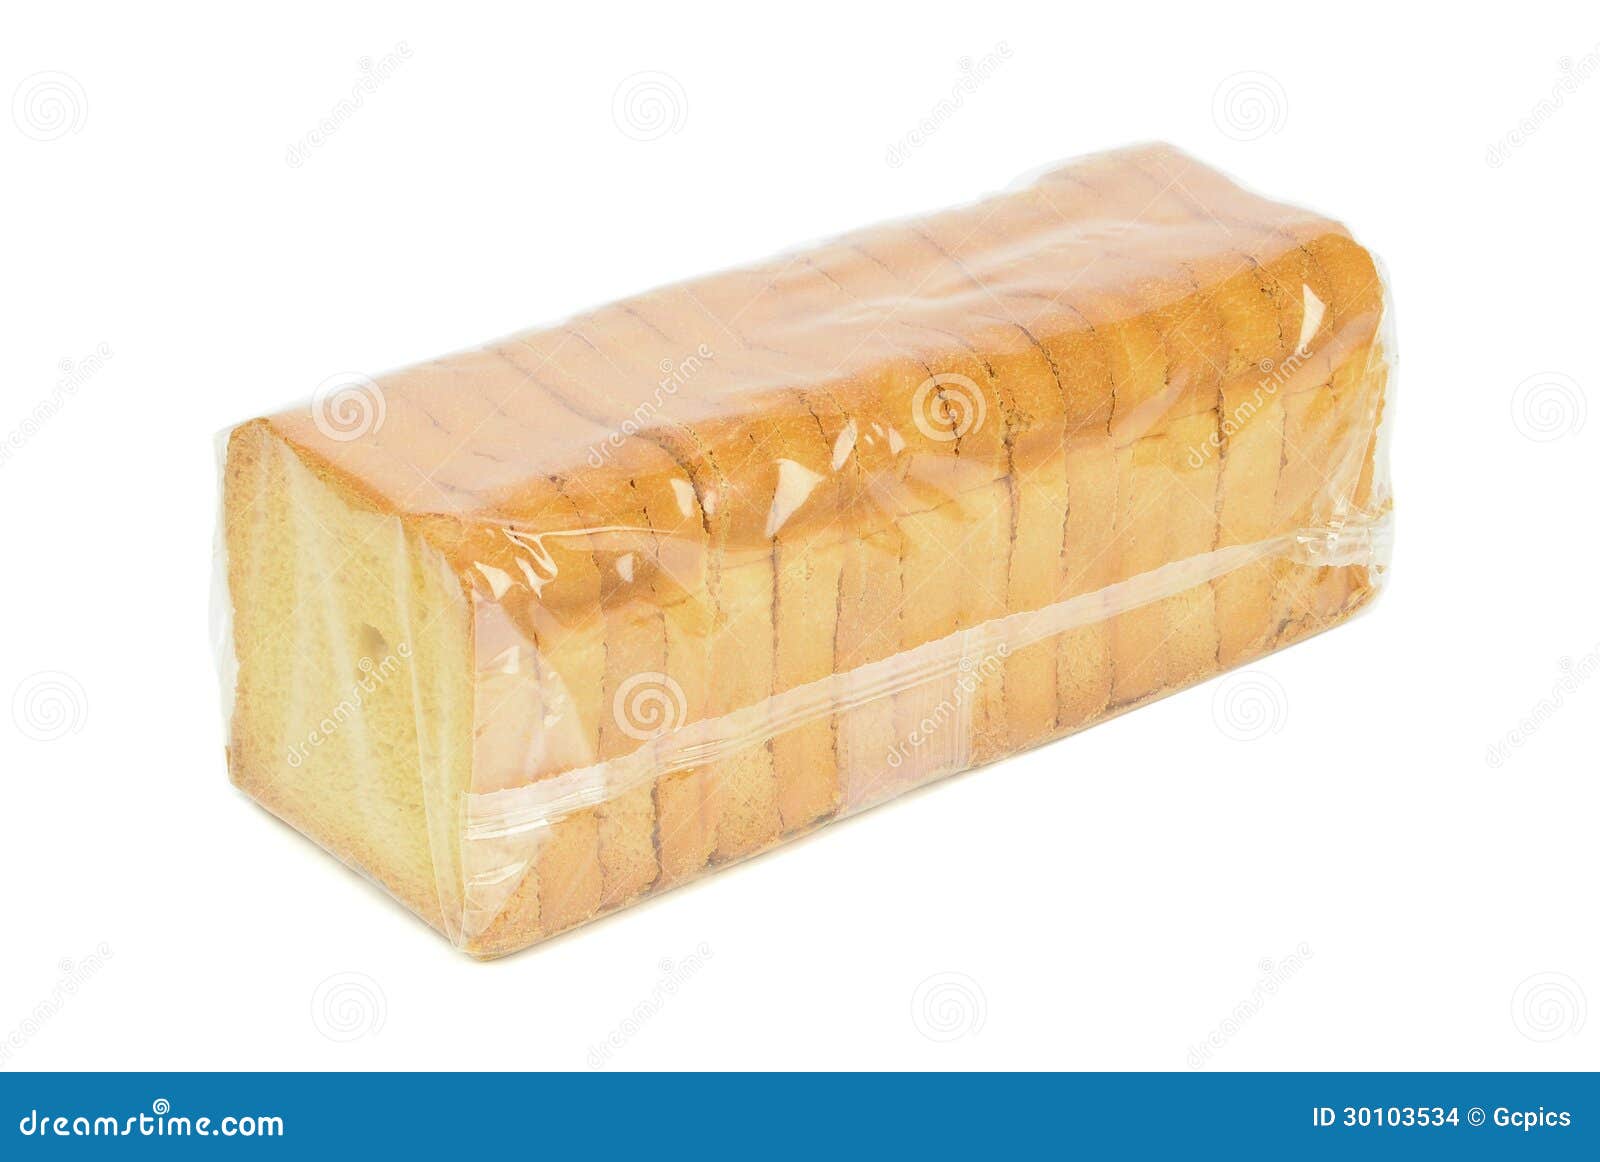 a sealed packet of crispbread